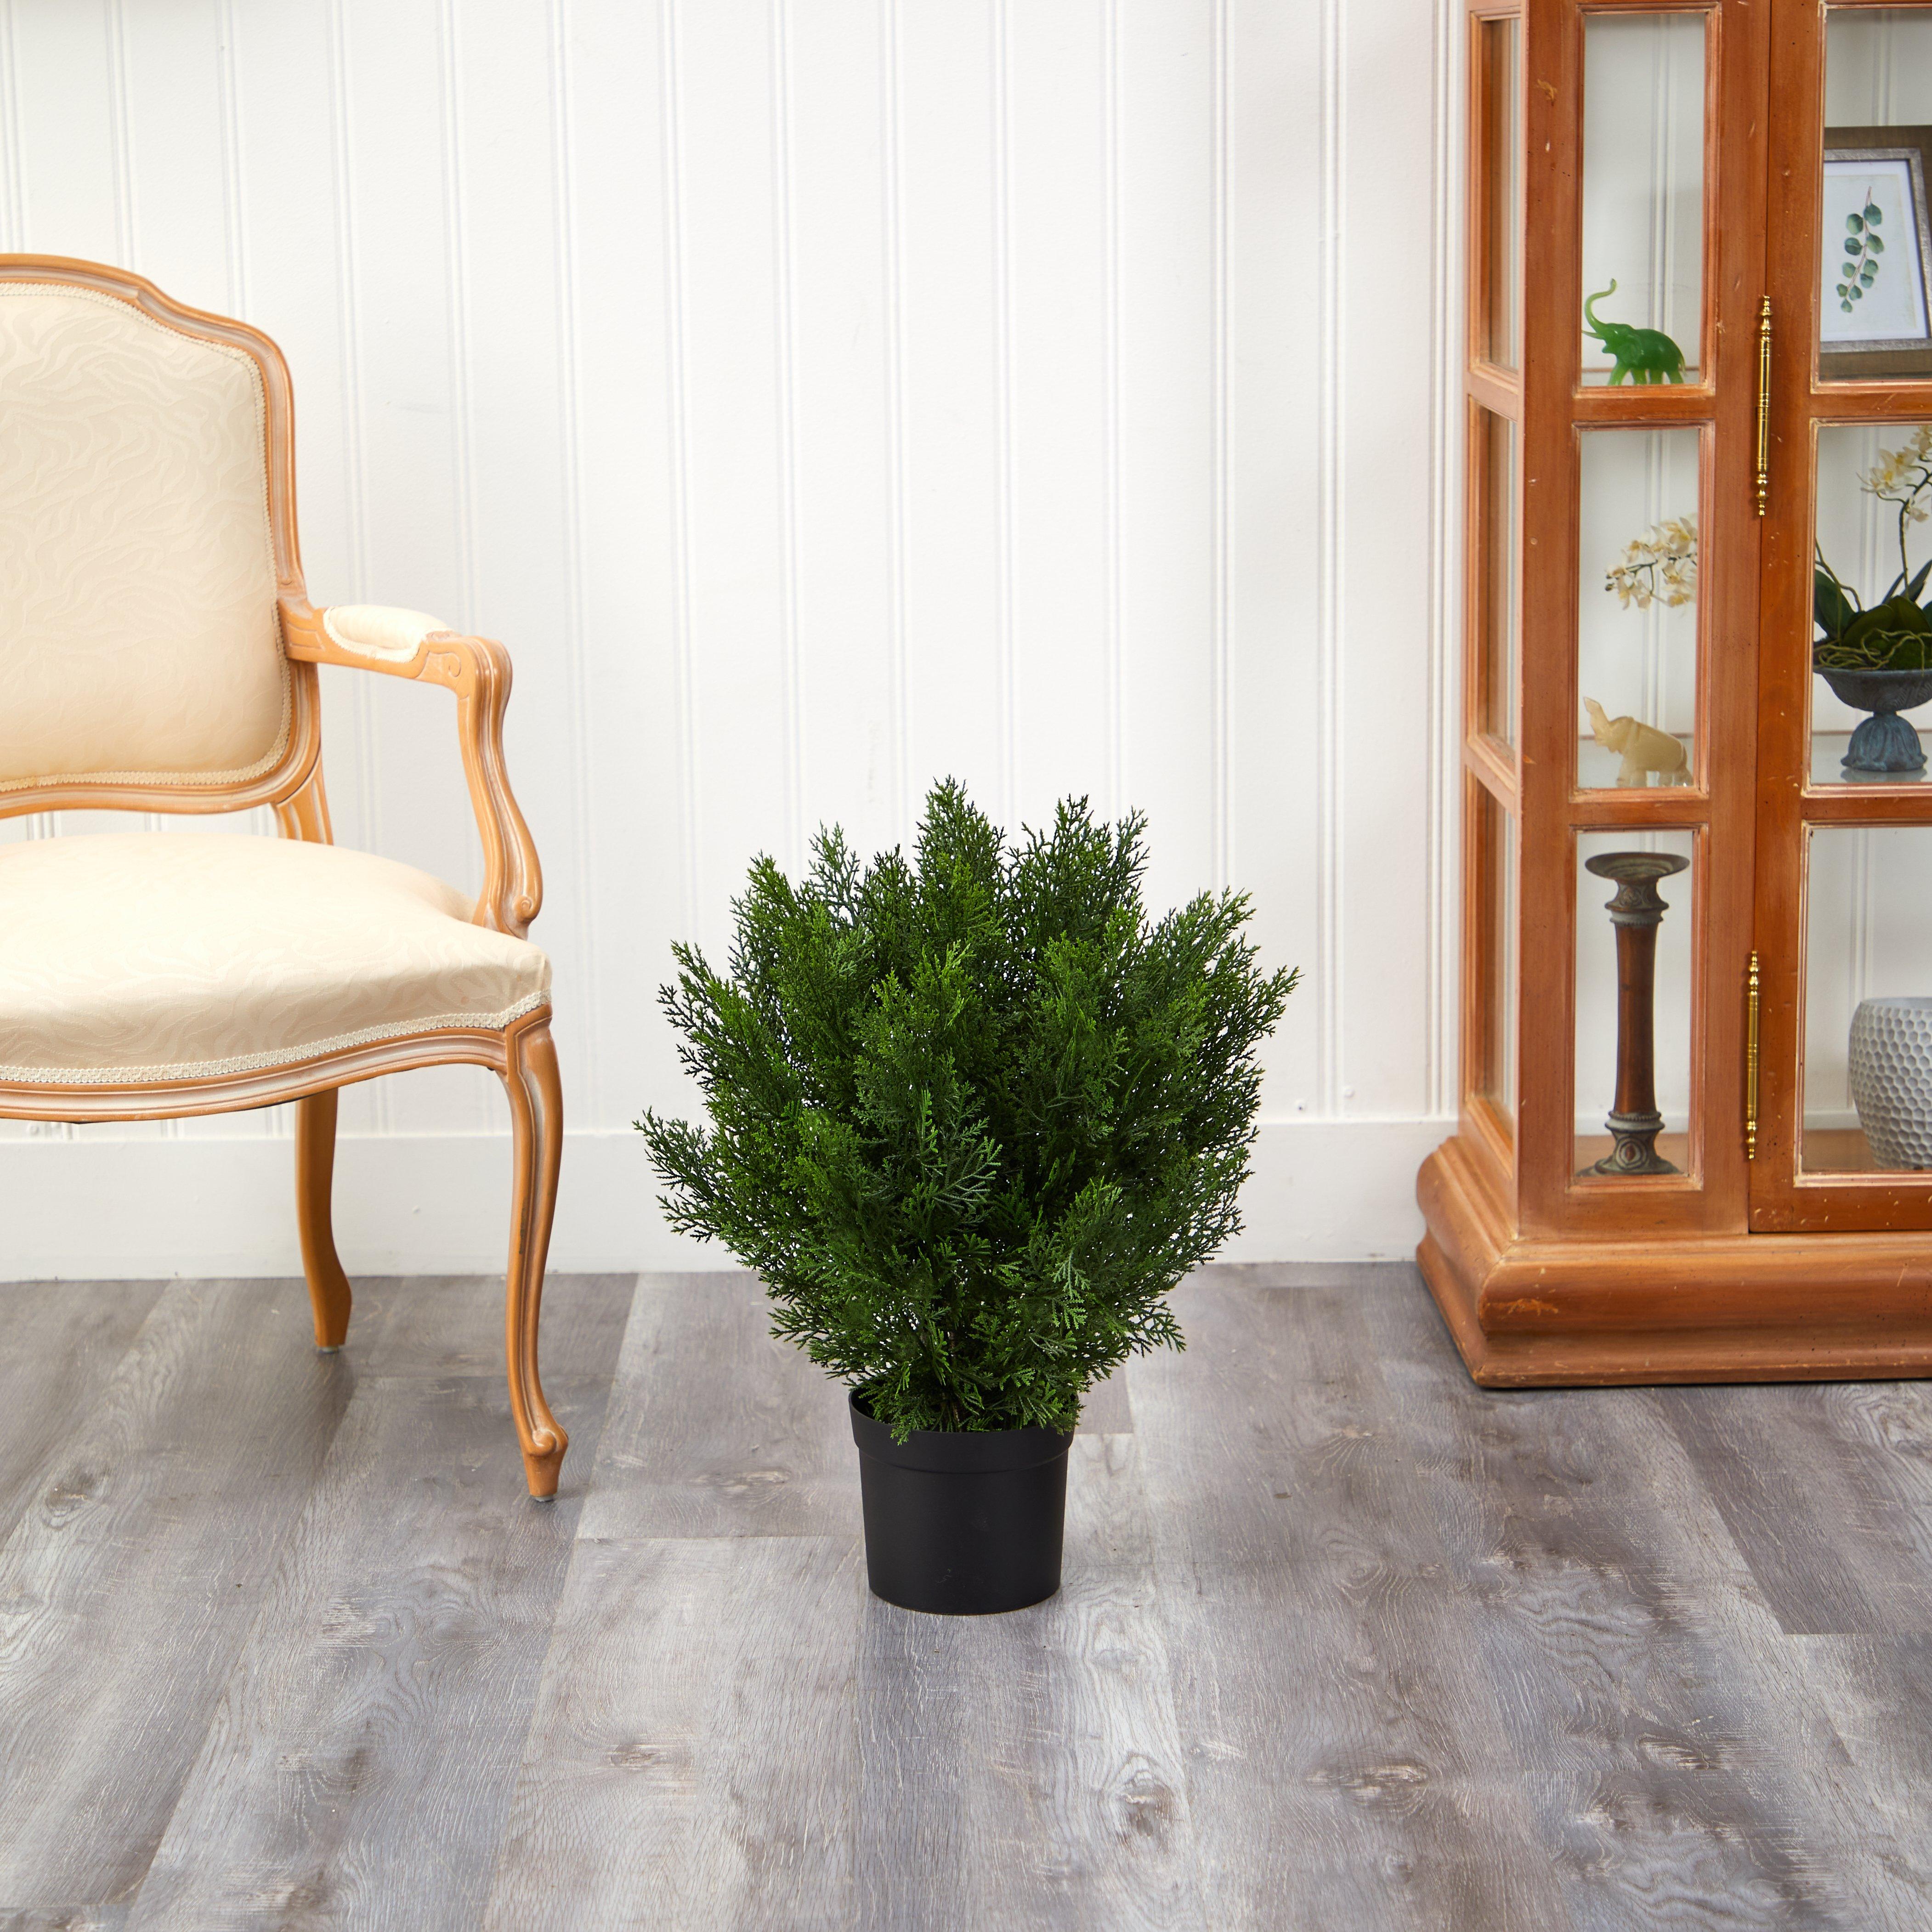 2’ Artificial Cedar Bush  indoor/outdoor